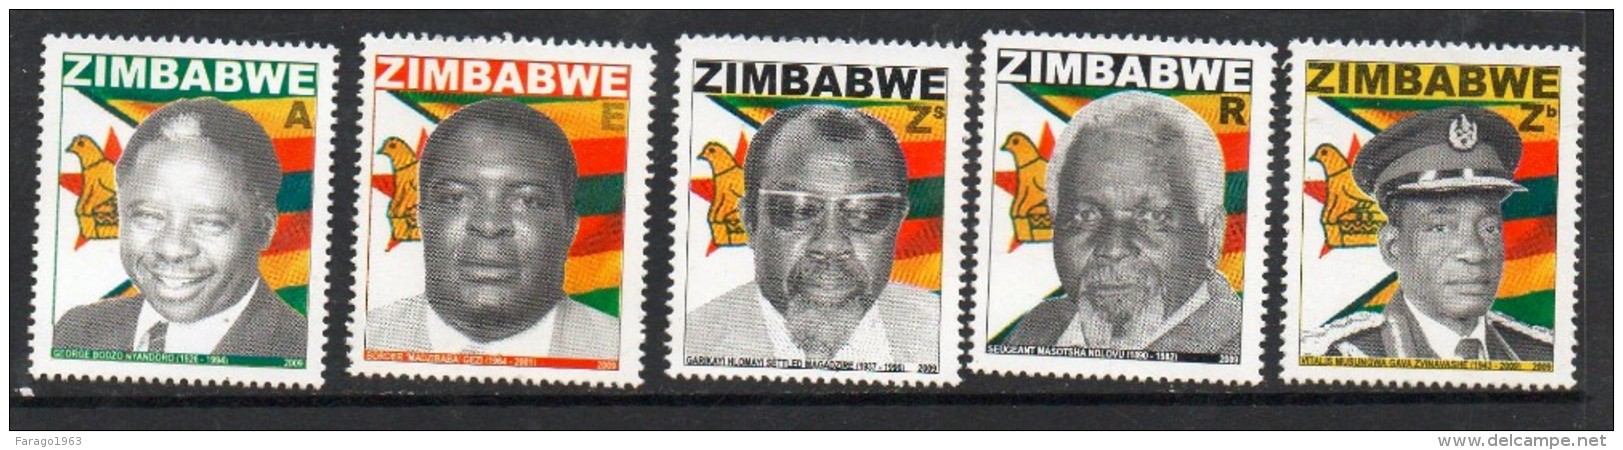 2009 Zimbabwe Heroes  Complete Set Of 5  MNH - Zimbabwe (1980-...)